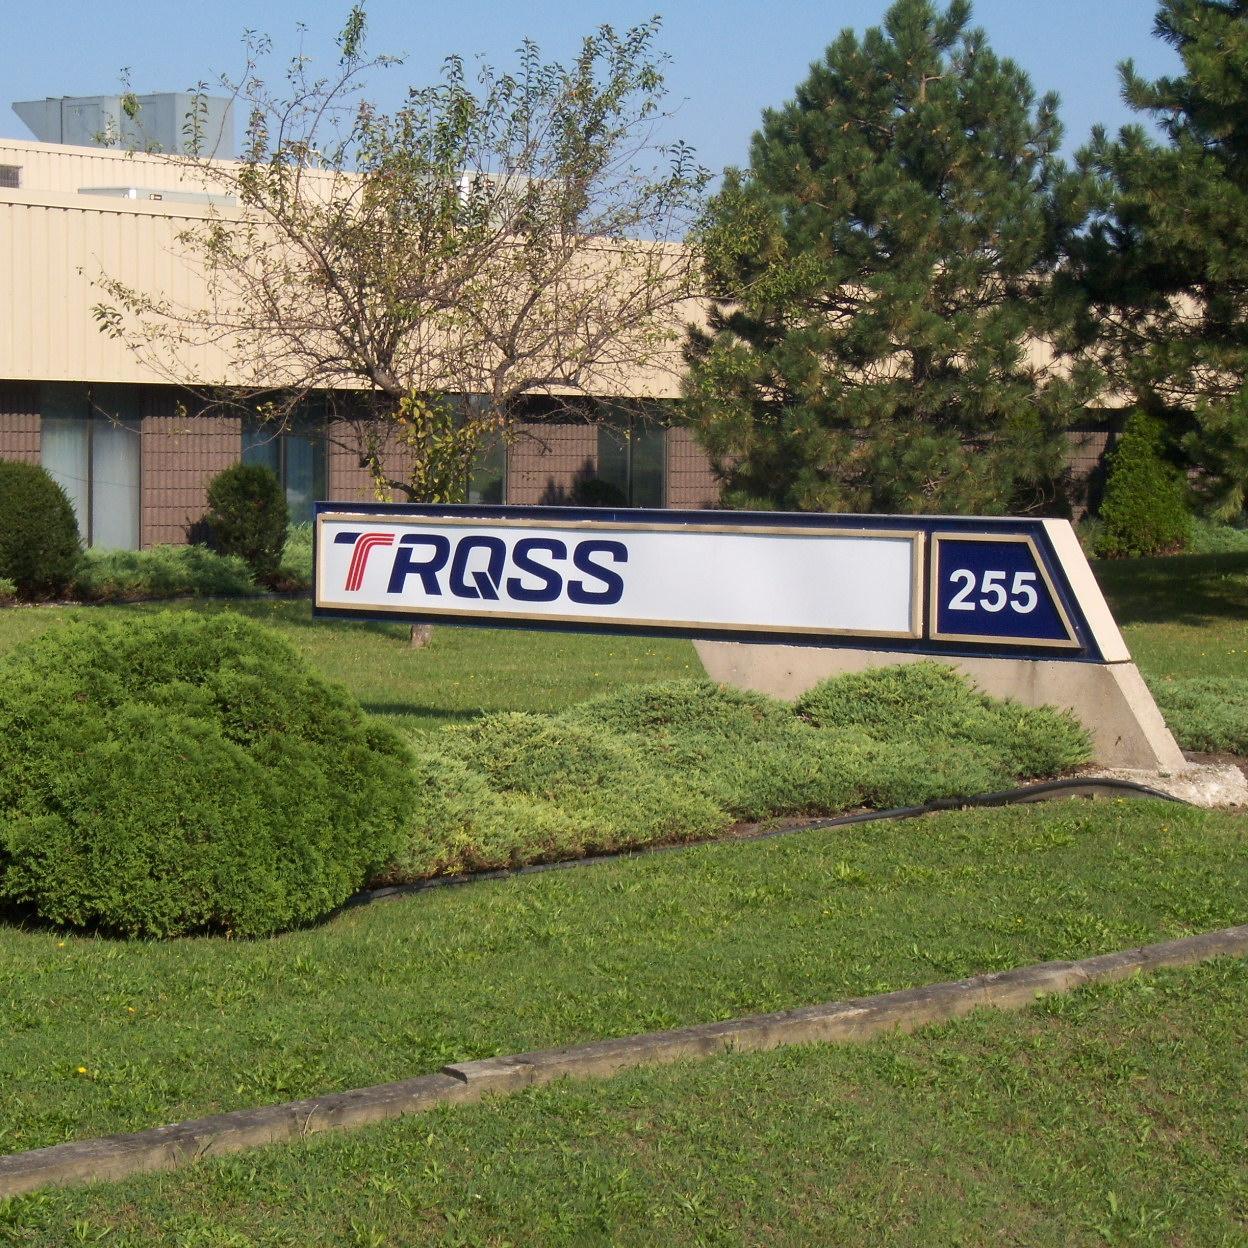 TRQSS, Inc.